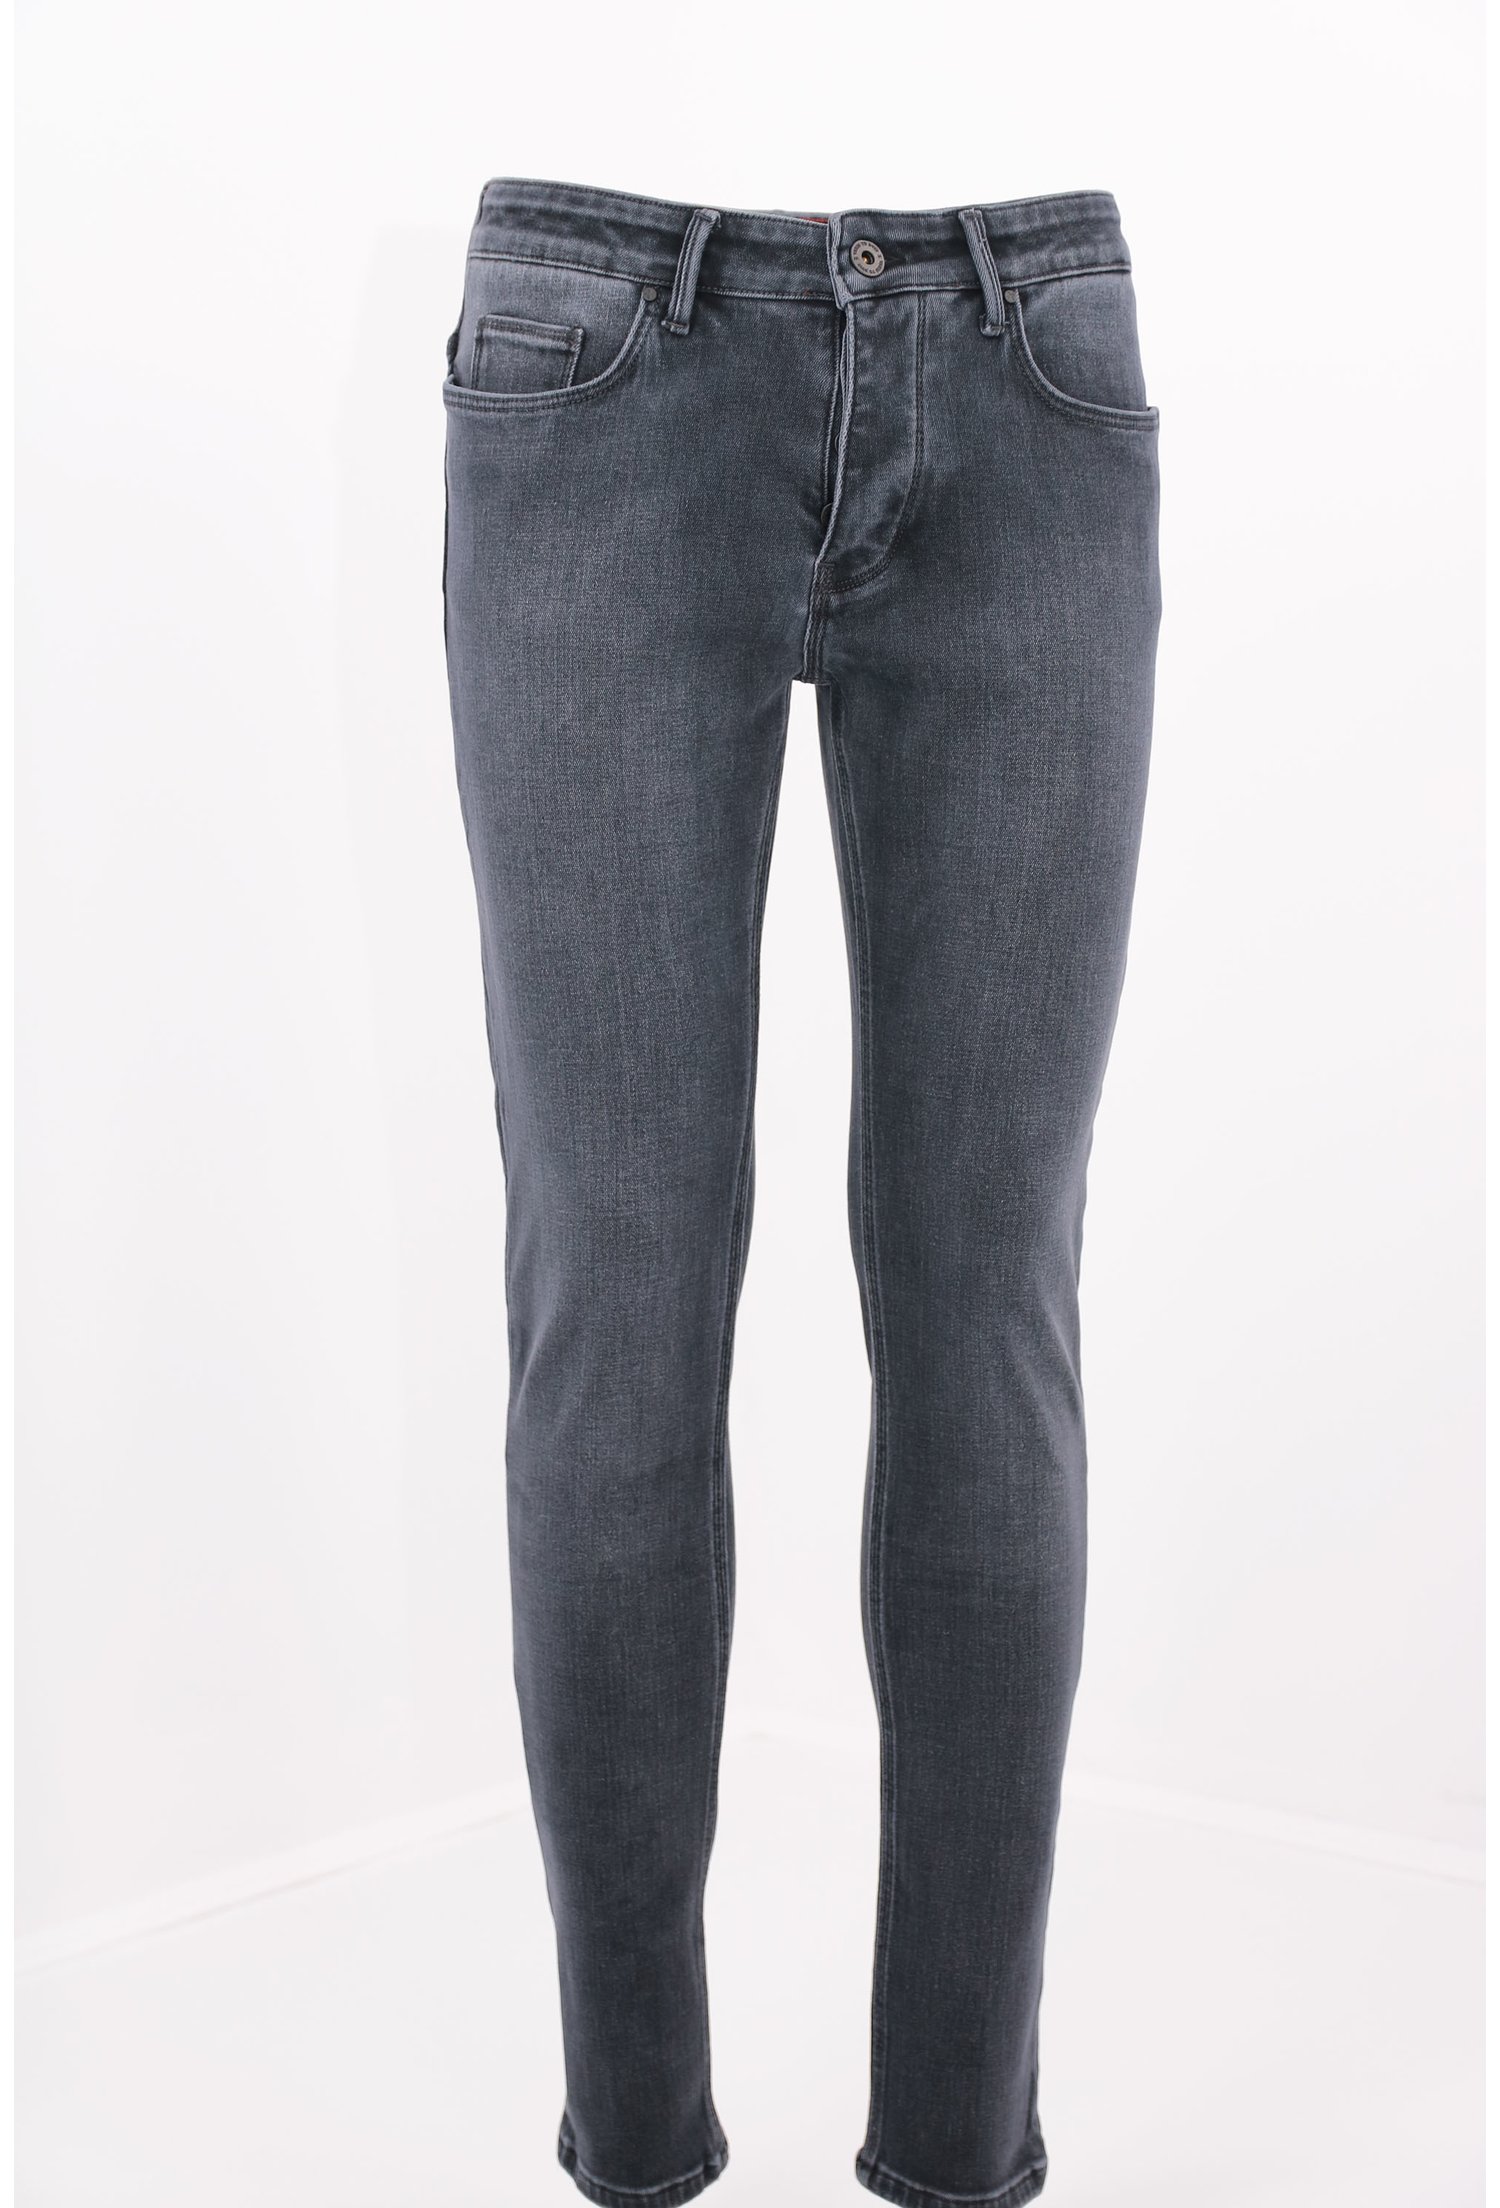 Jeans gri inchis decolorati